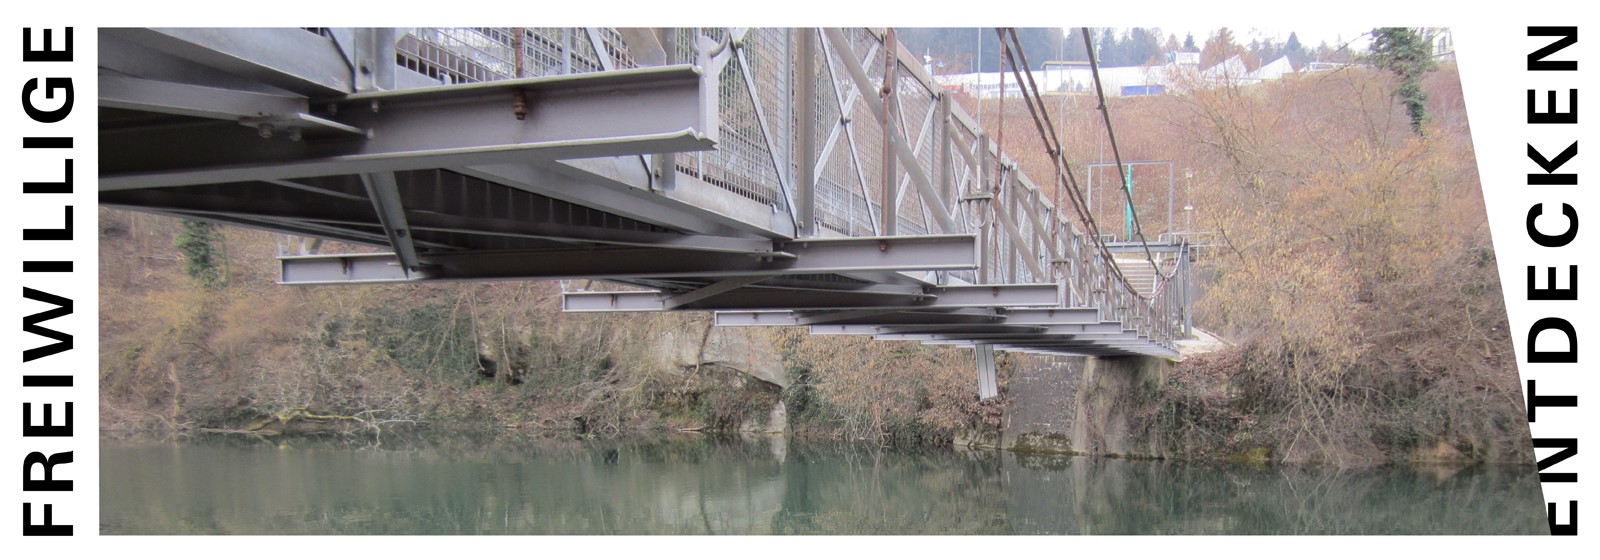 Foto der Hängebrücke zwischen Wettingen und Neuenhof